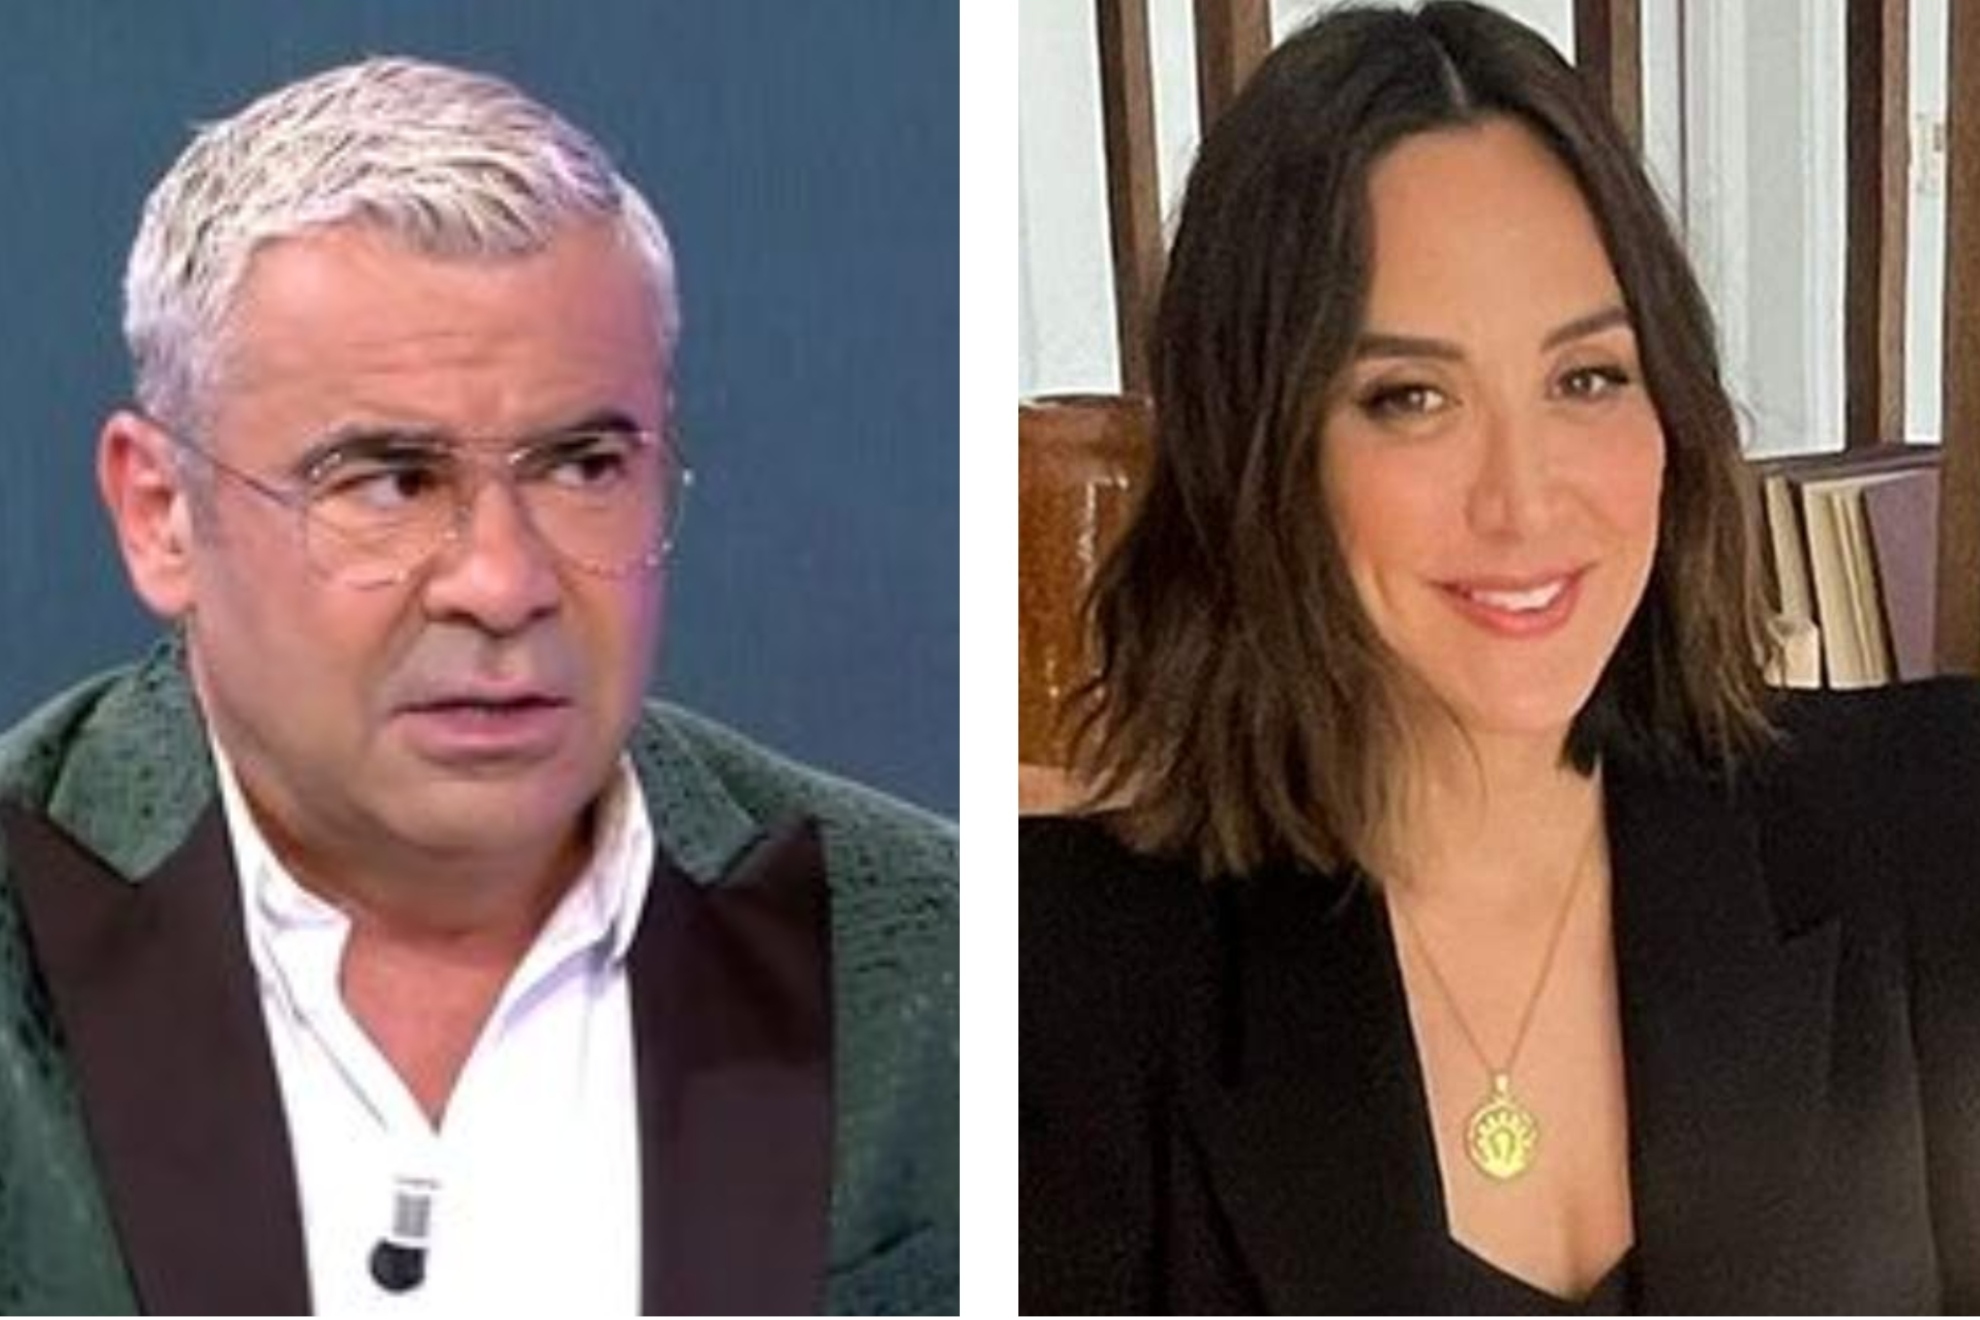 Jorge Javier Vázquez vuelve a zasca limpio con Tamara: "Tienes una crisis de imagen de tres pares de narices...".